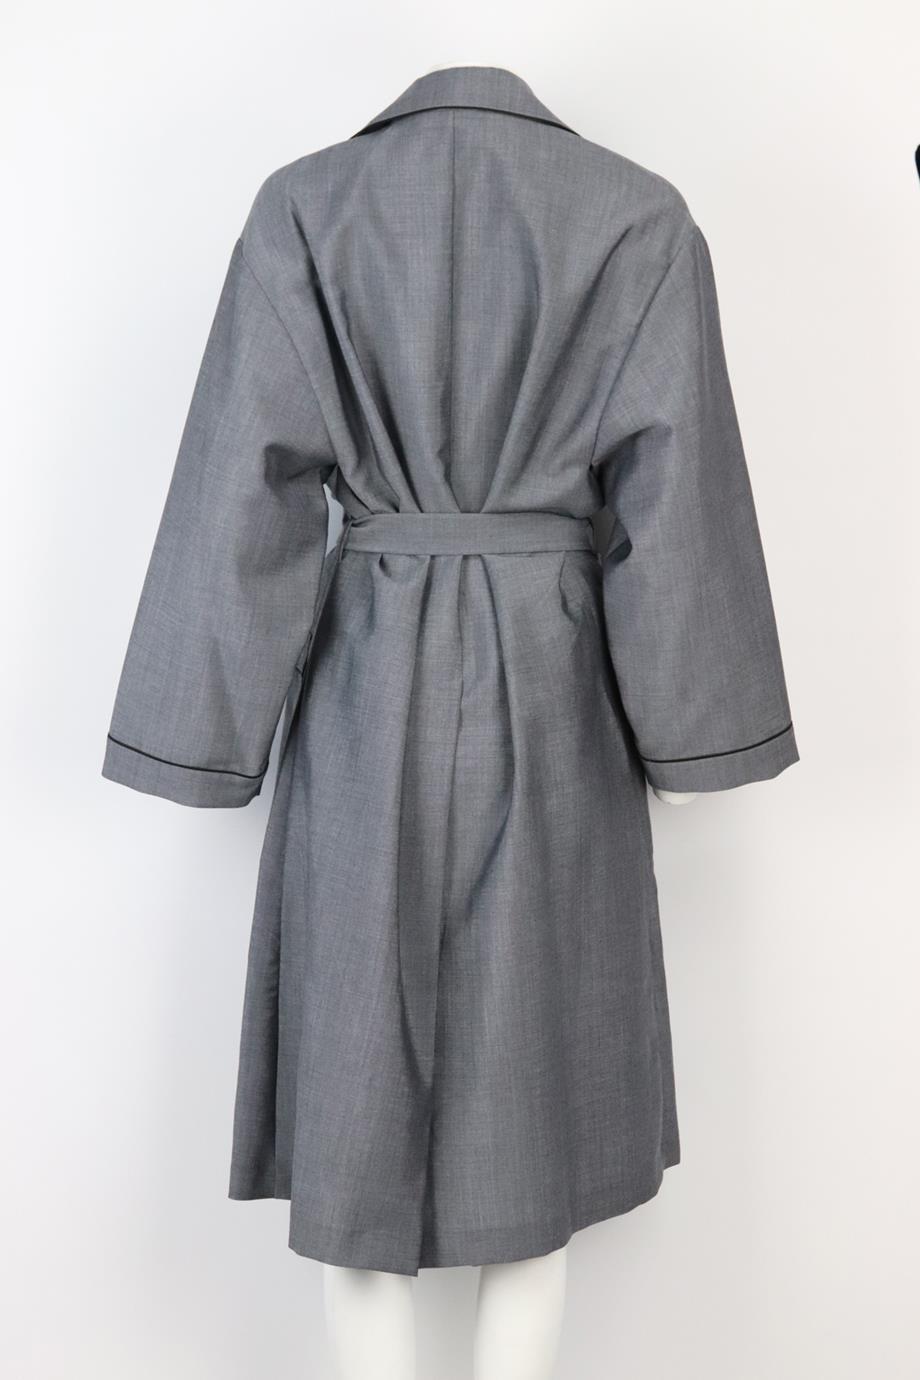 prada bathrobe